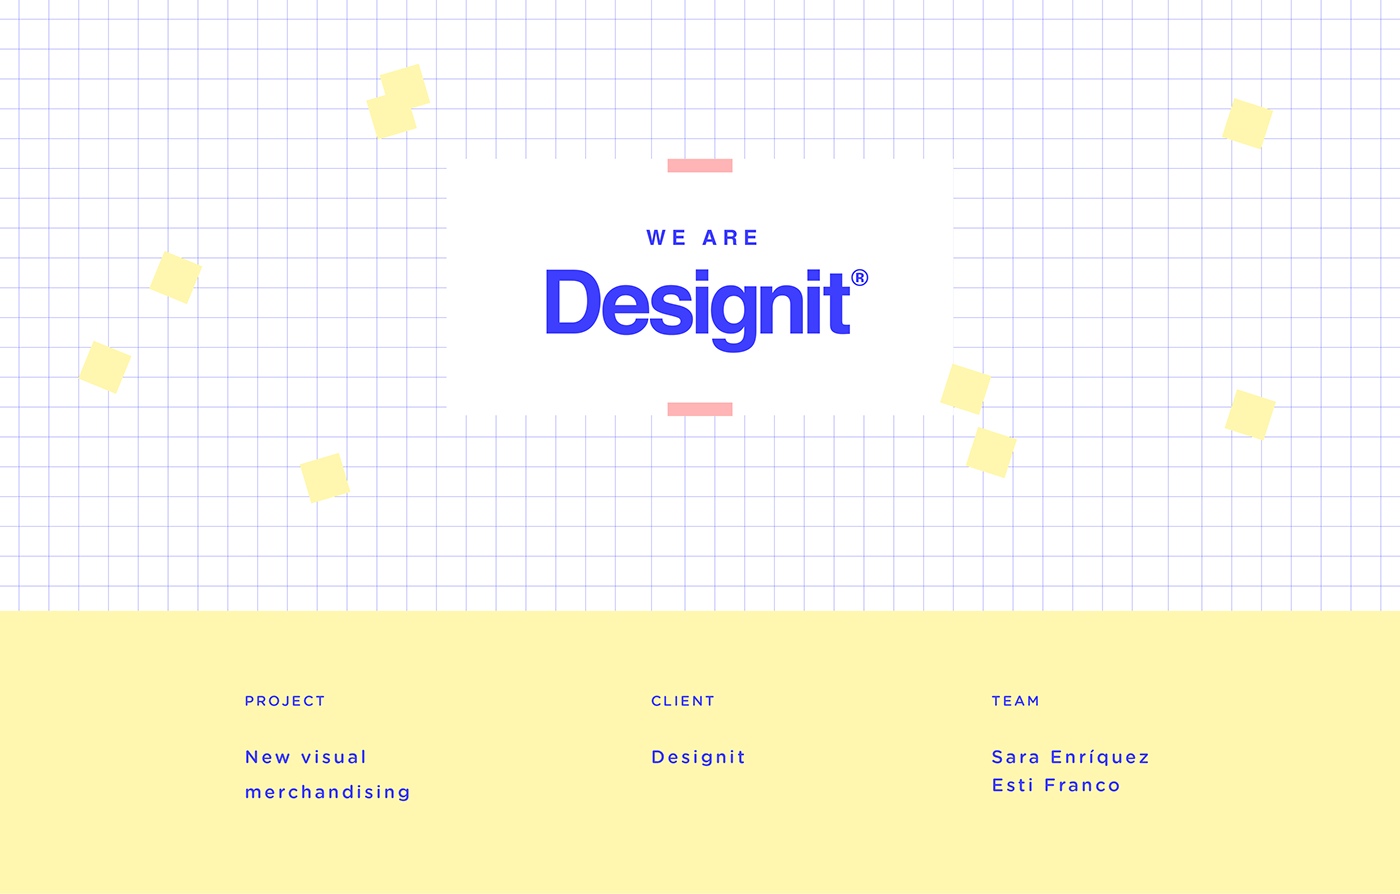 DesignIt color marketing   notebook totebag Love design together Work 